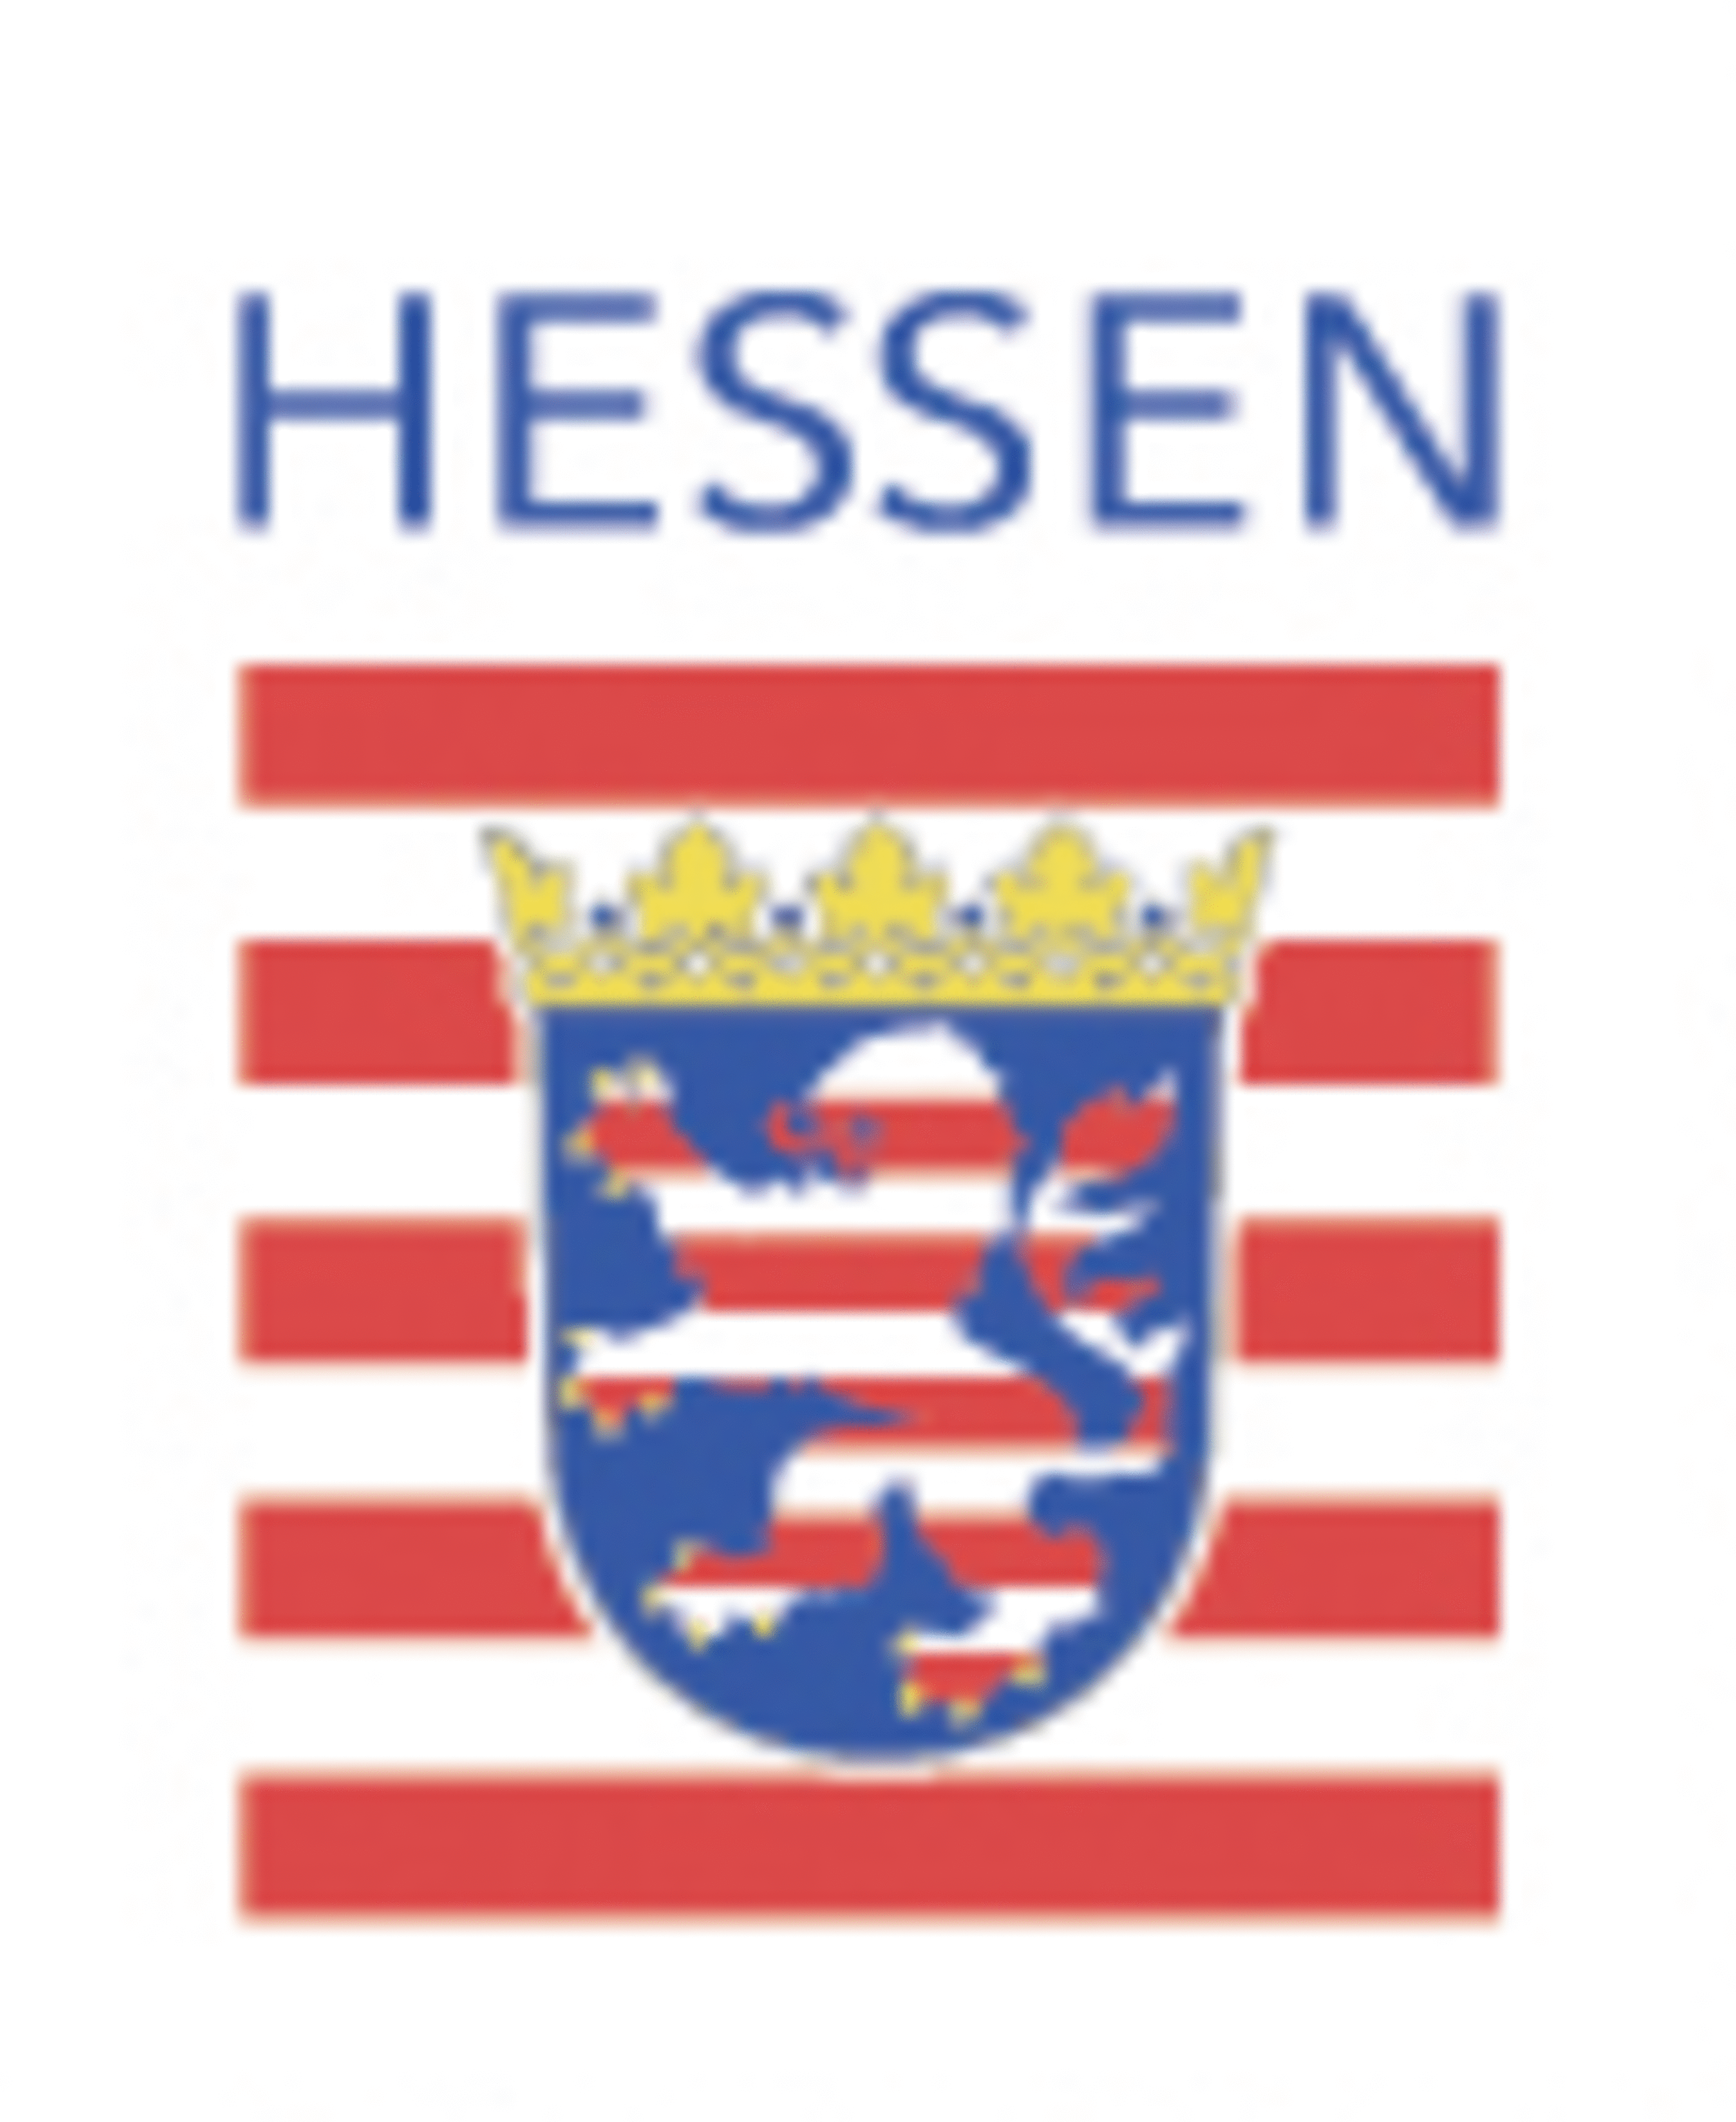 Hessisches Landesamt für Naturschutz logo